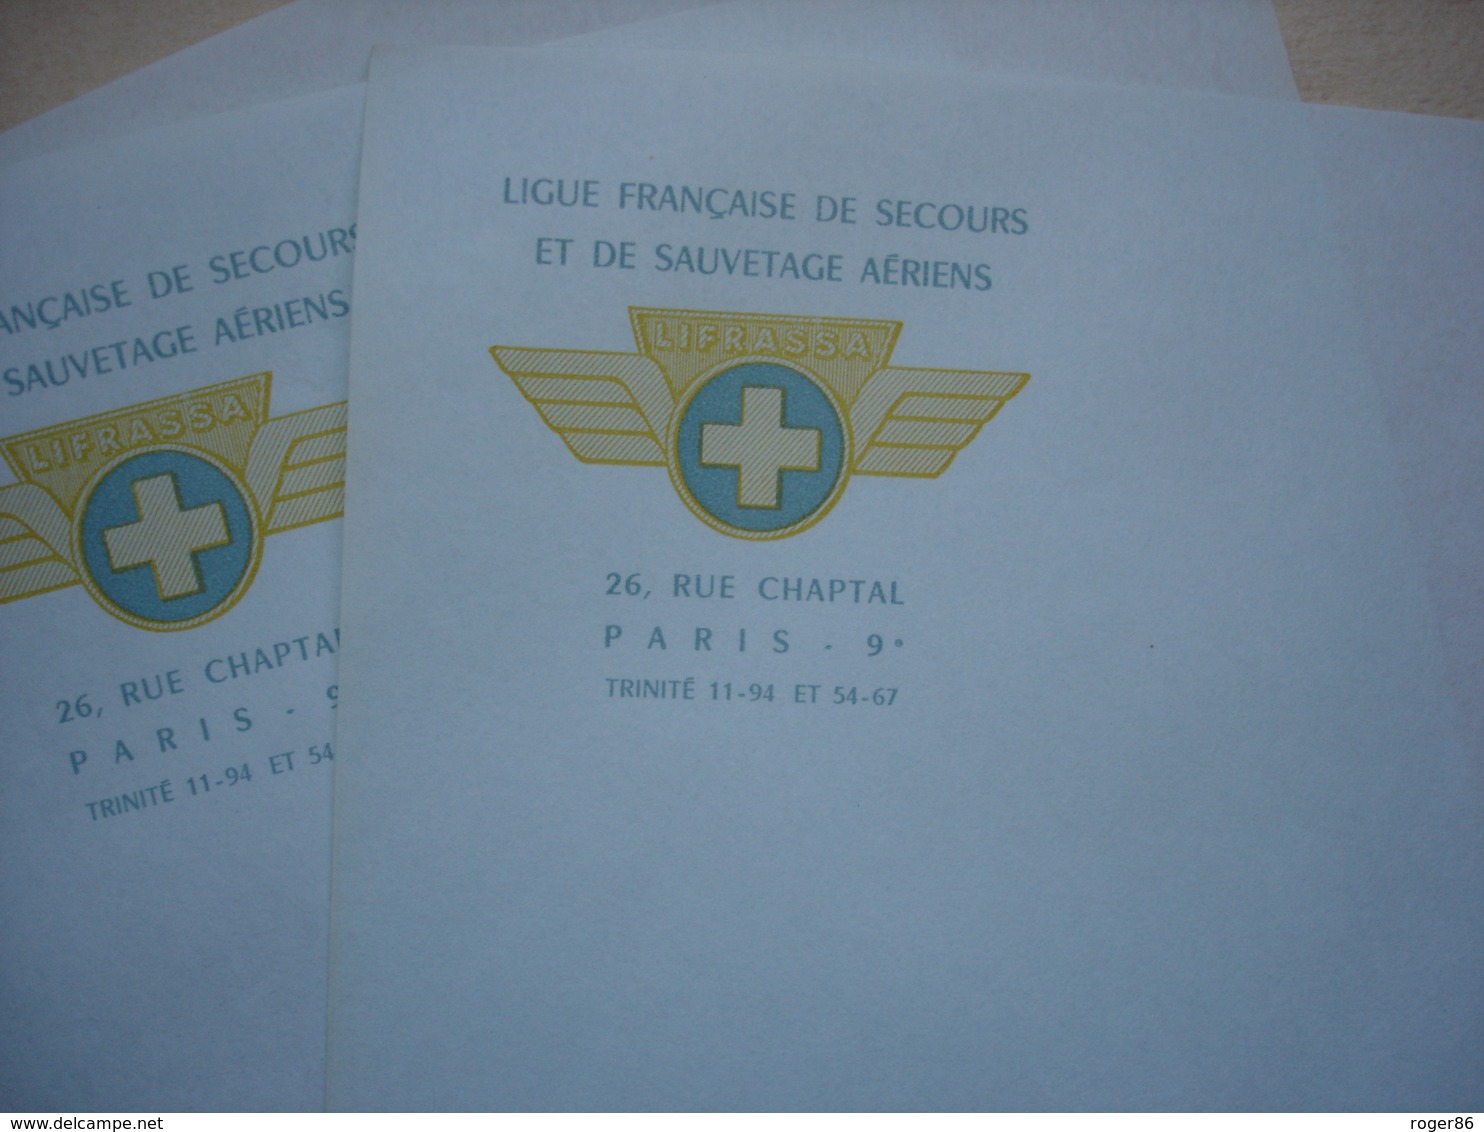 POMPIERS création de la sécurité civile 1956 LIGUE FRANCAISE DE SECOURS ET DE SAUVETAGE AERIEN PAR HELICOPTERE